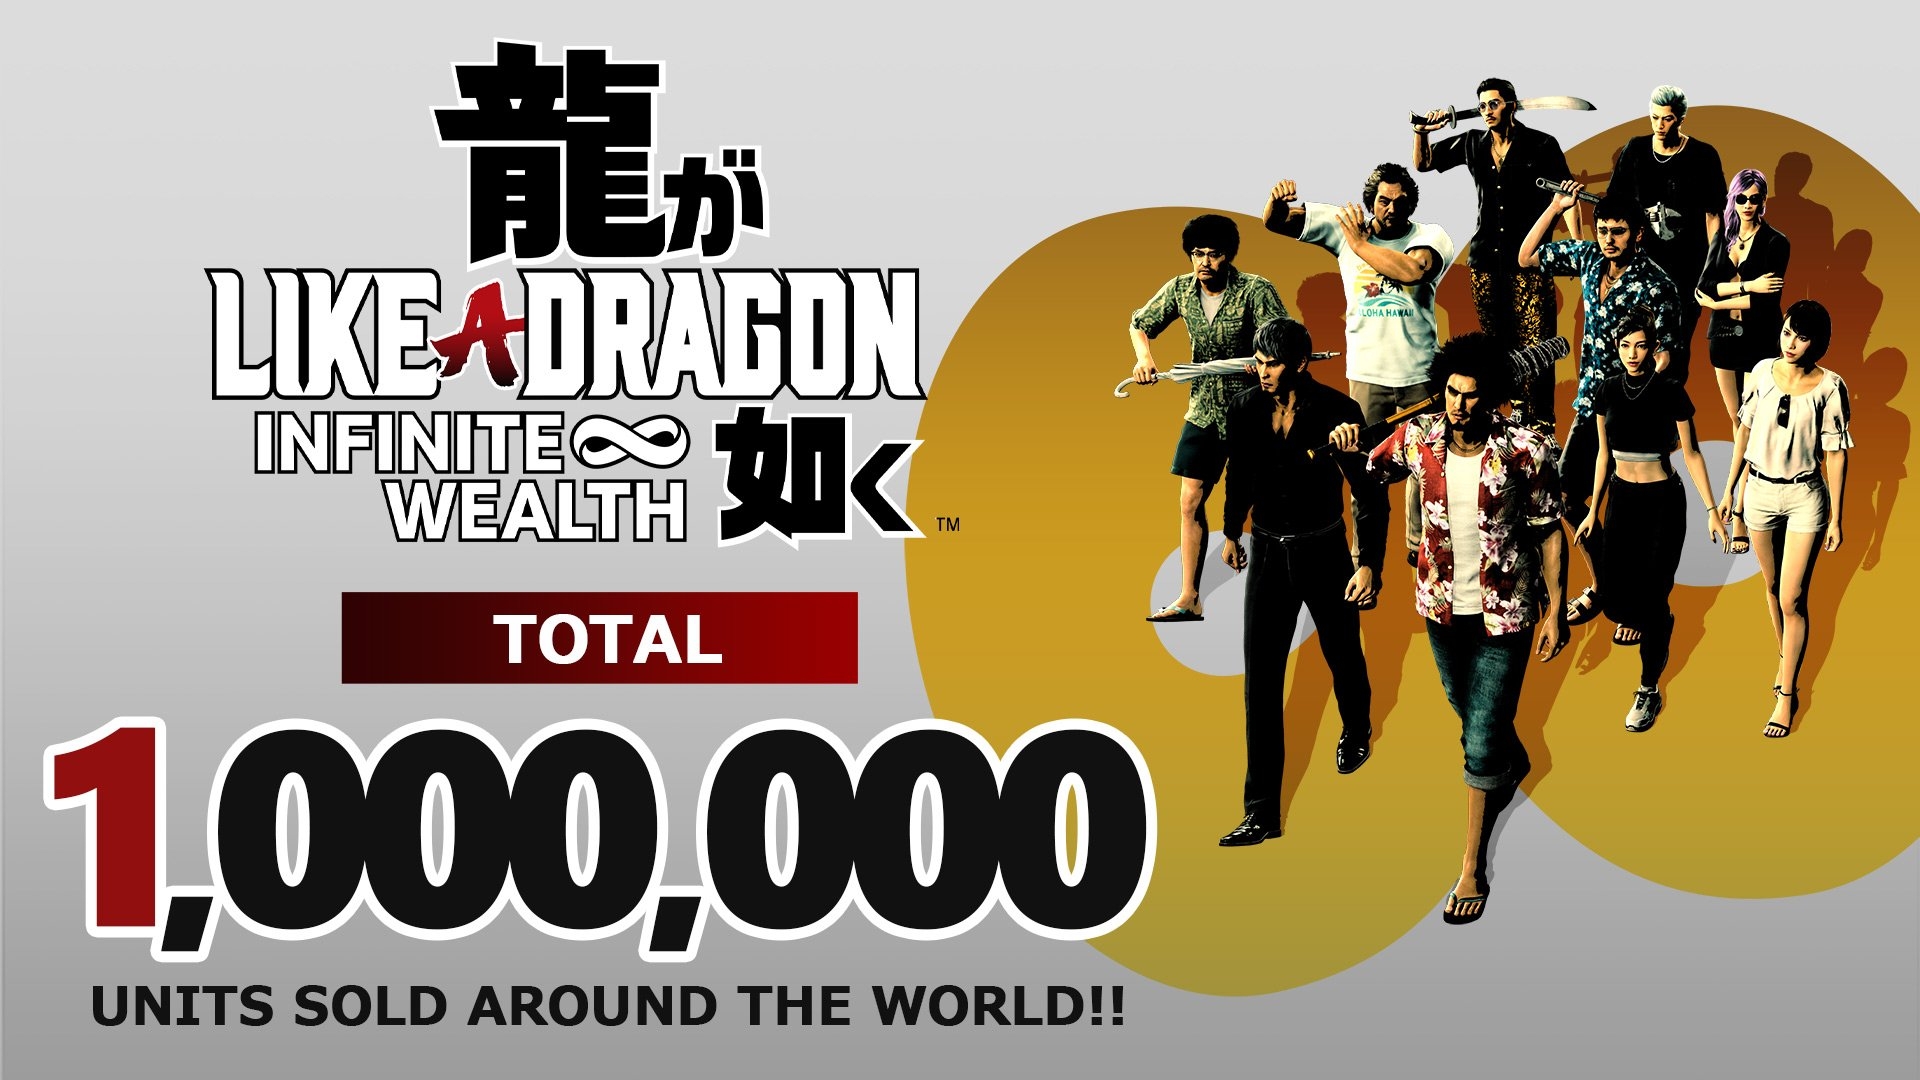 بازی Like a Dragon: Infinite Wealth تاکنون یک میلیون نسخه فروخته